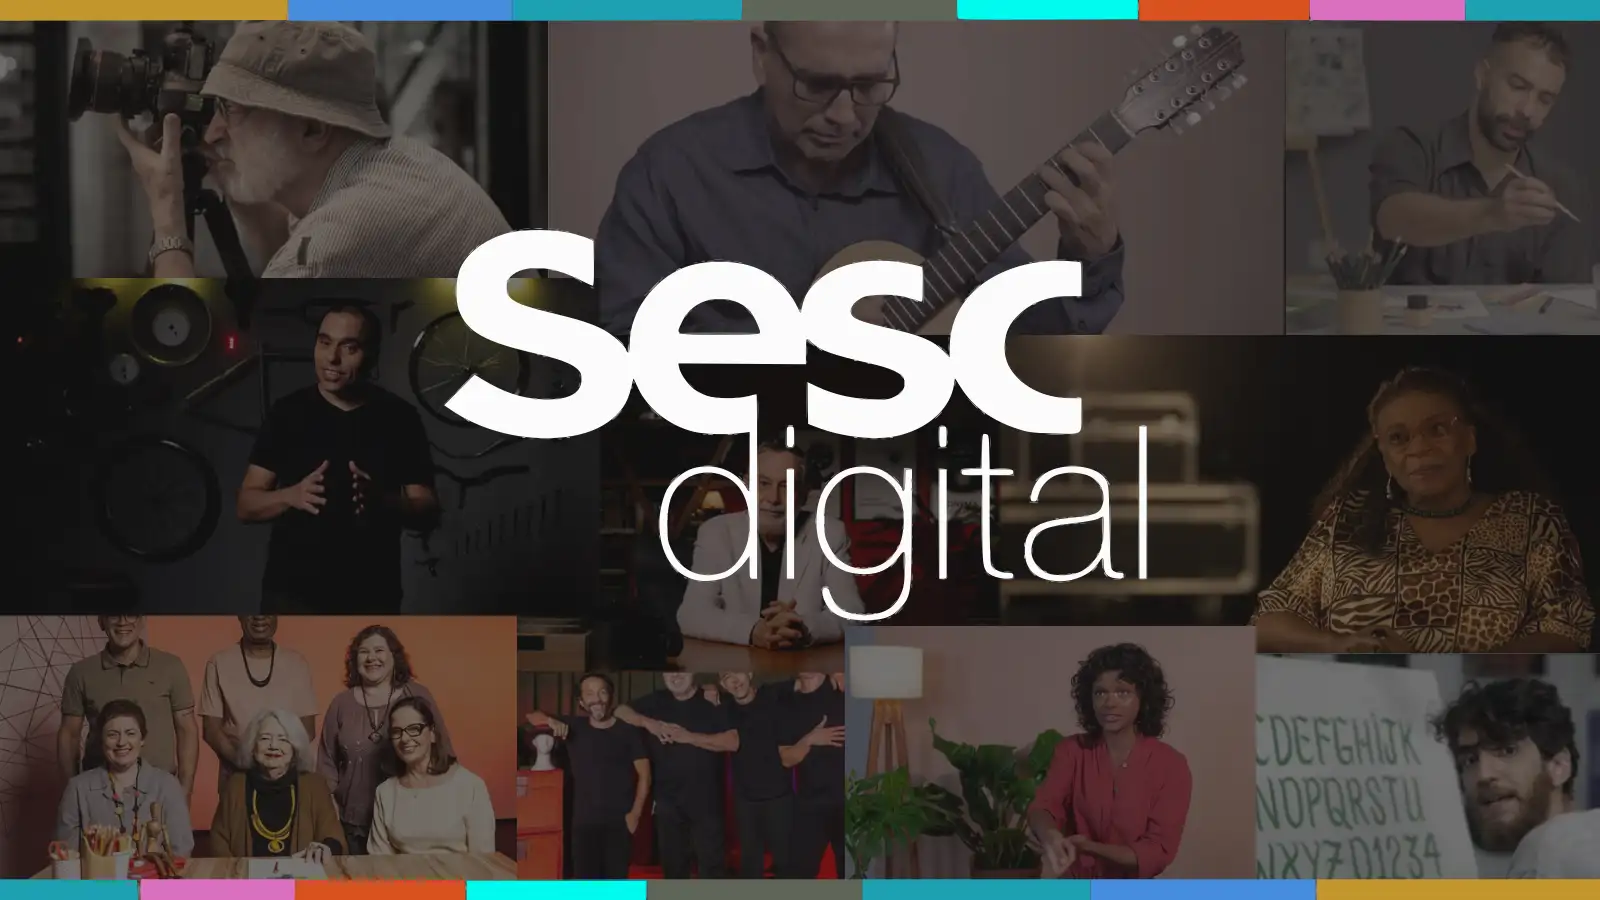 16 cursos online do SESC Digital gratuitos e com certificado 1 WebP